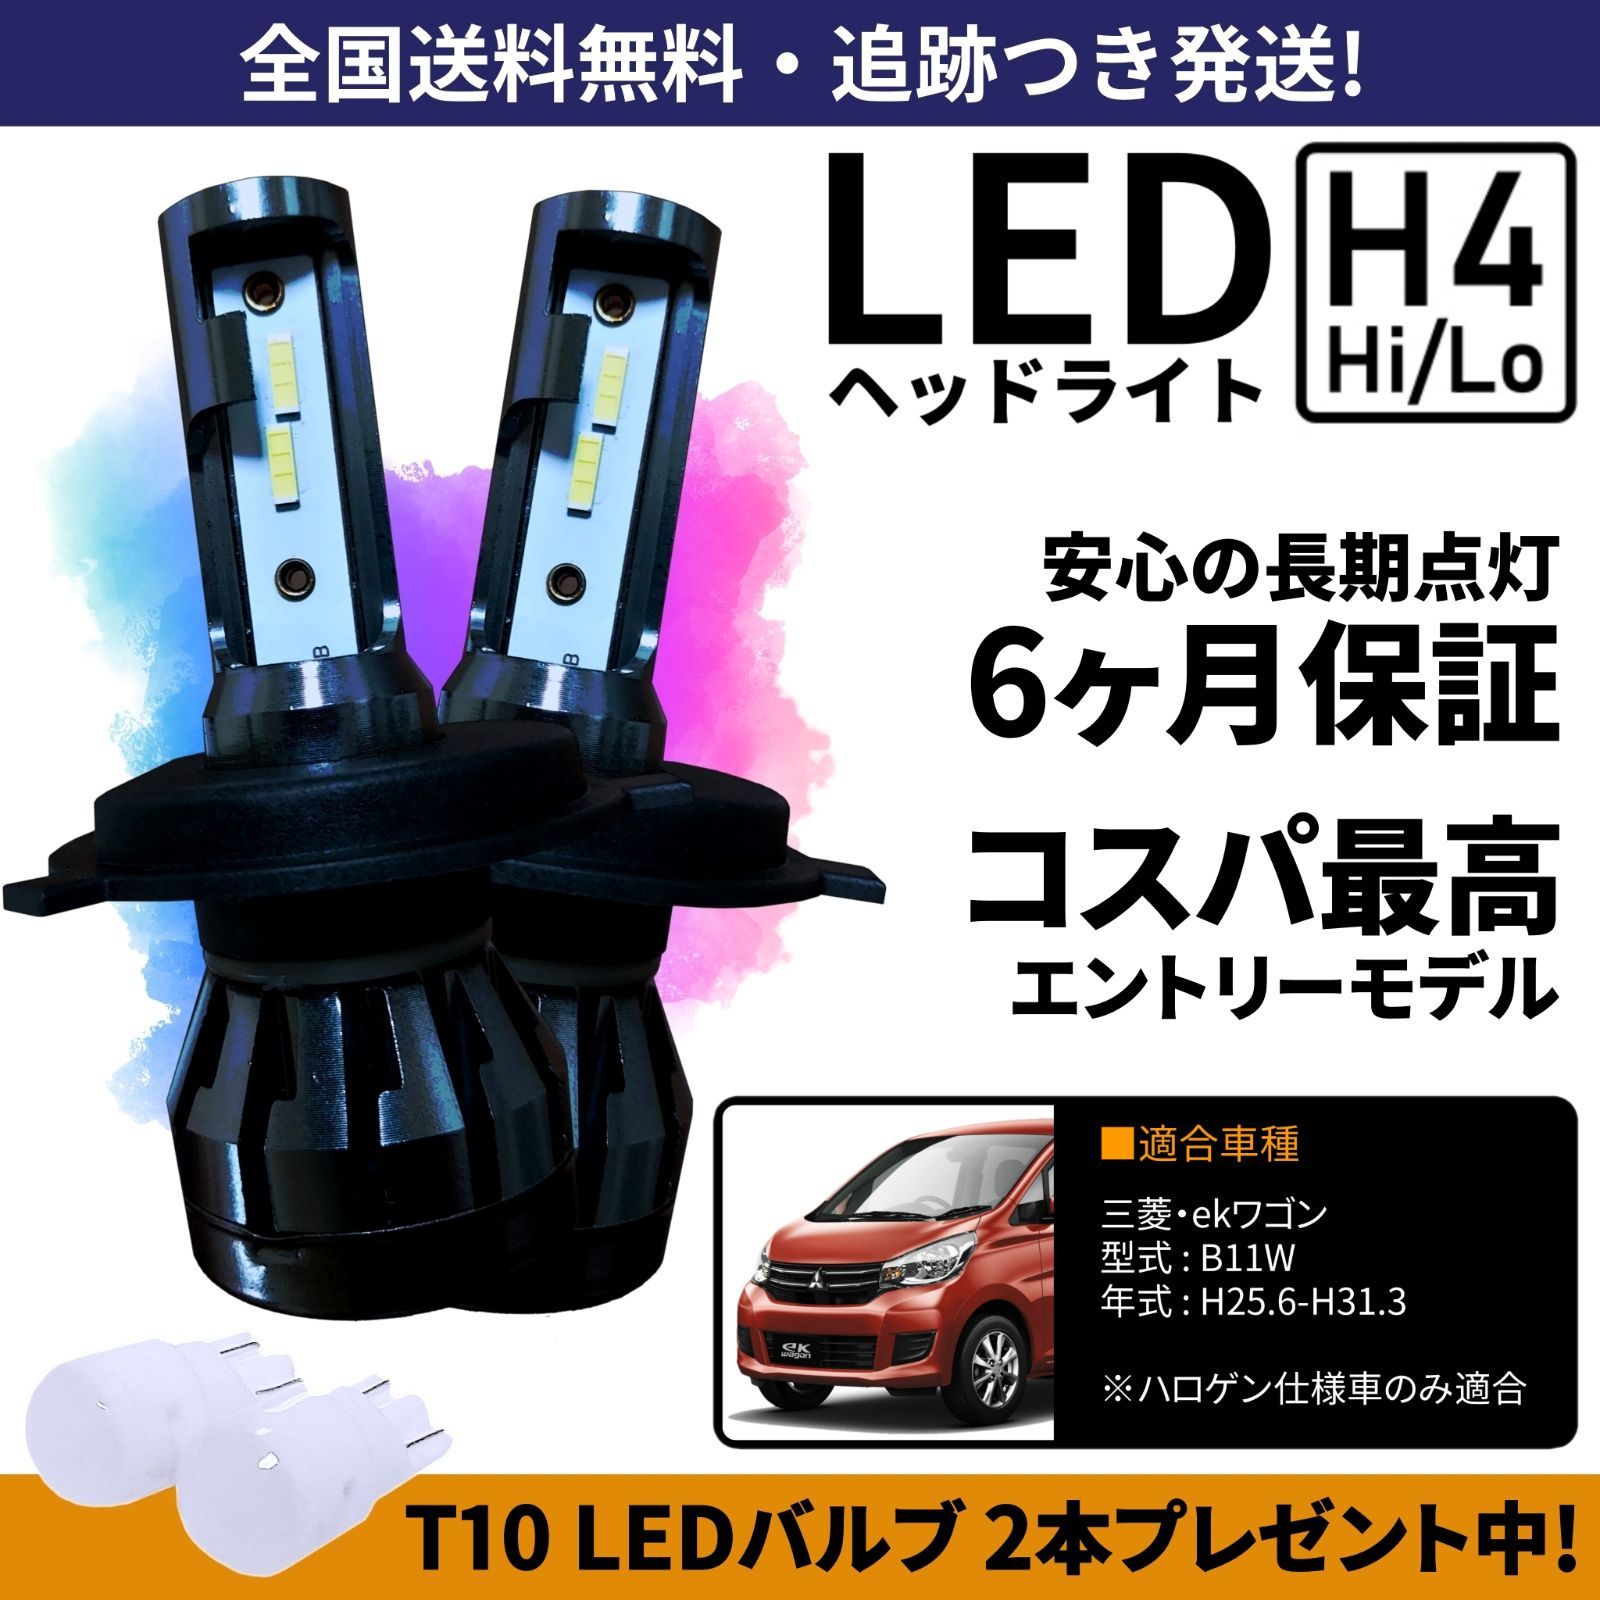 【送料無料】三菱 ekワゴン B11W LEDヘッドライト H4 Hi/Lo ホワイト 6000K 車検対応 保証付き